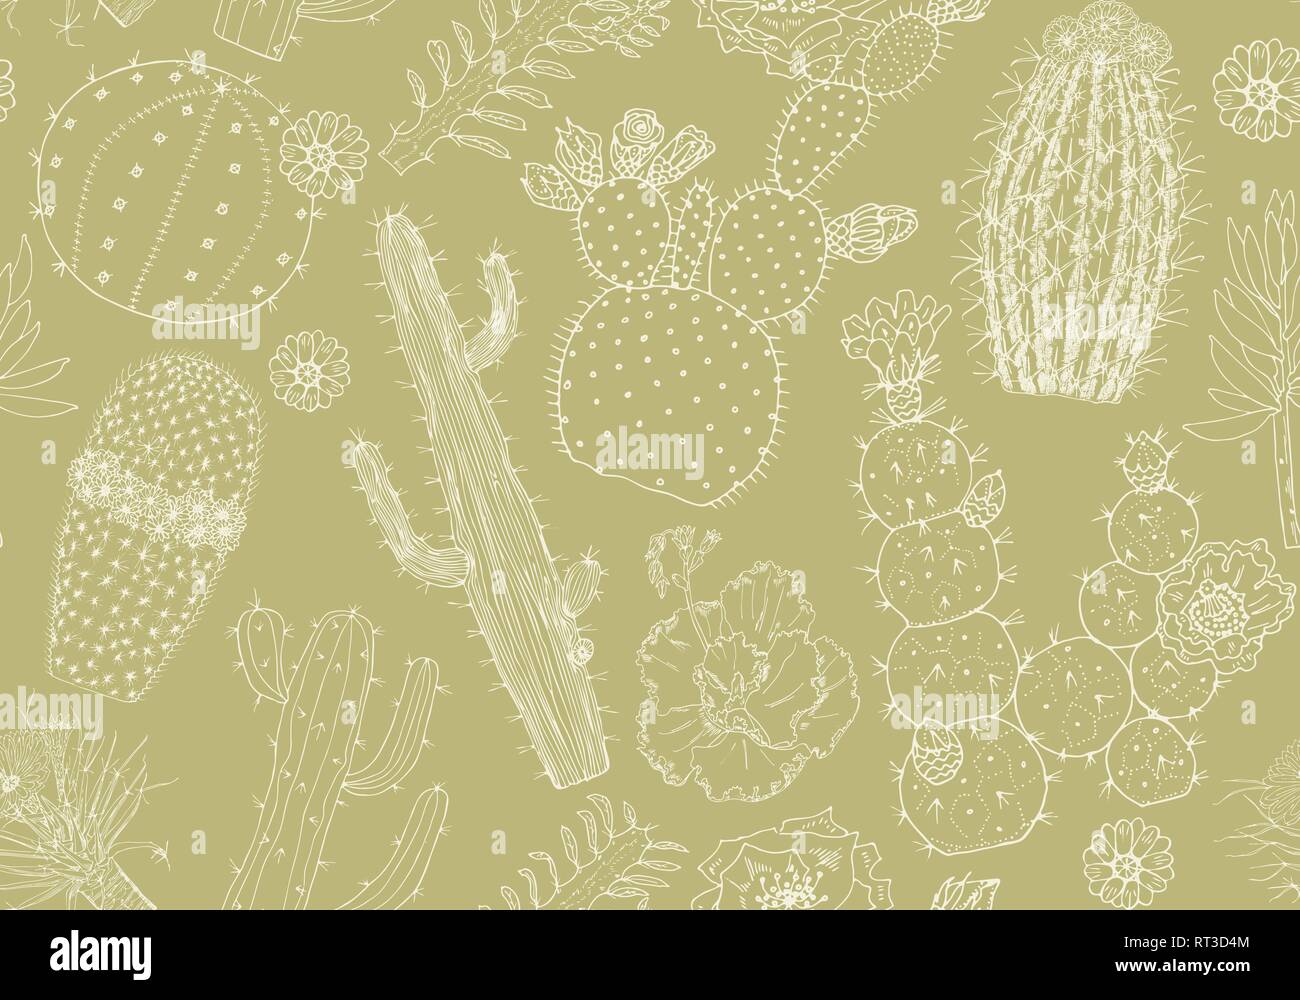 Cactus nahtlose Muster und Blumen. Gemütliche cute Elemente. Sammlung von tropischen Sukkulenten und Pflanzen in Vintage doodle Stil. Graviert Hand gezeichnet Stock Vektor